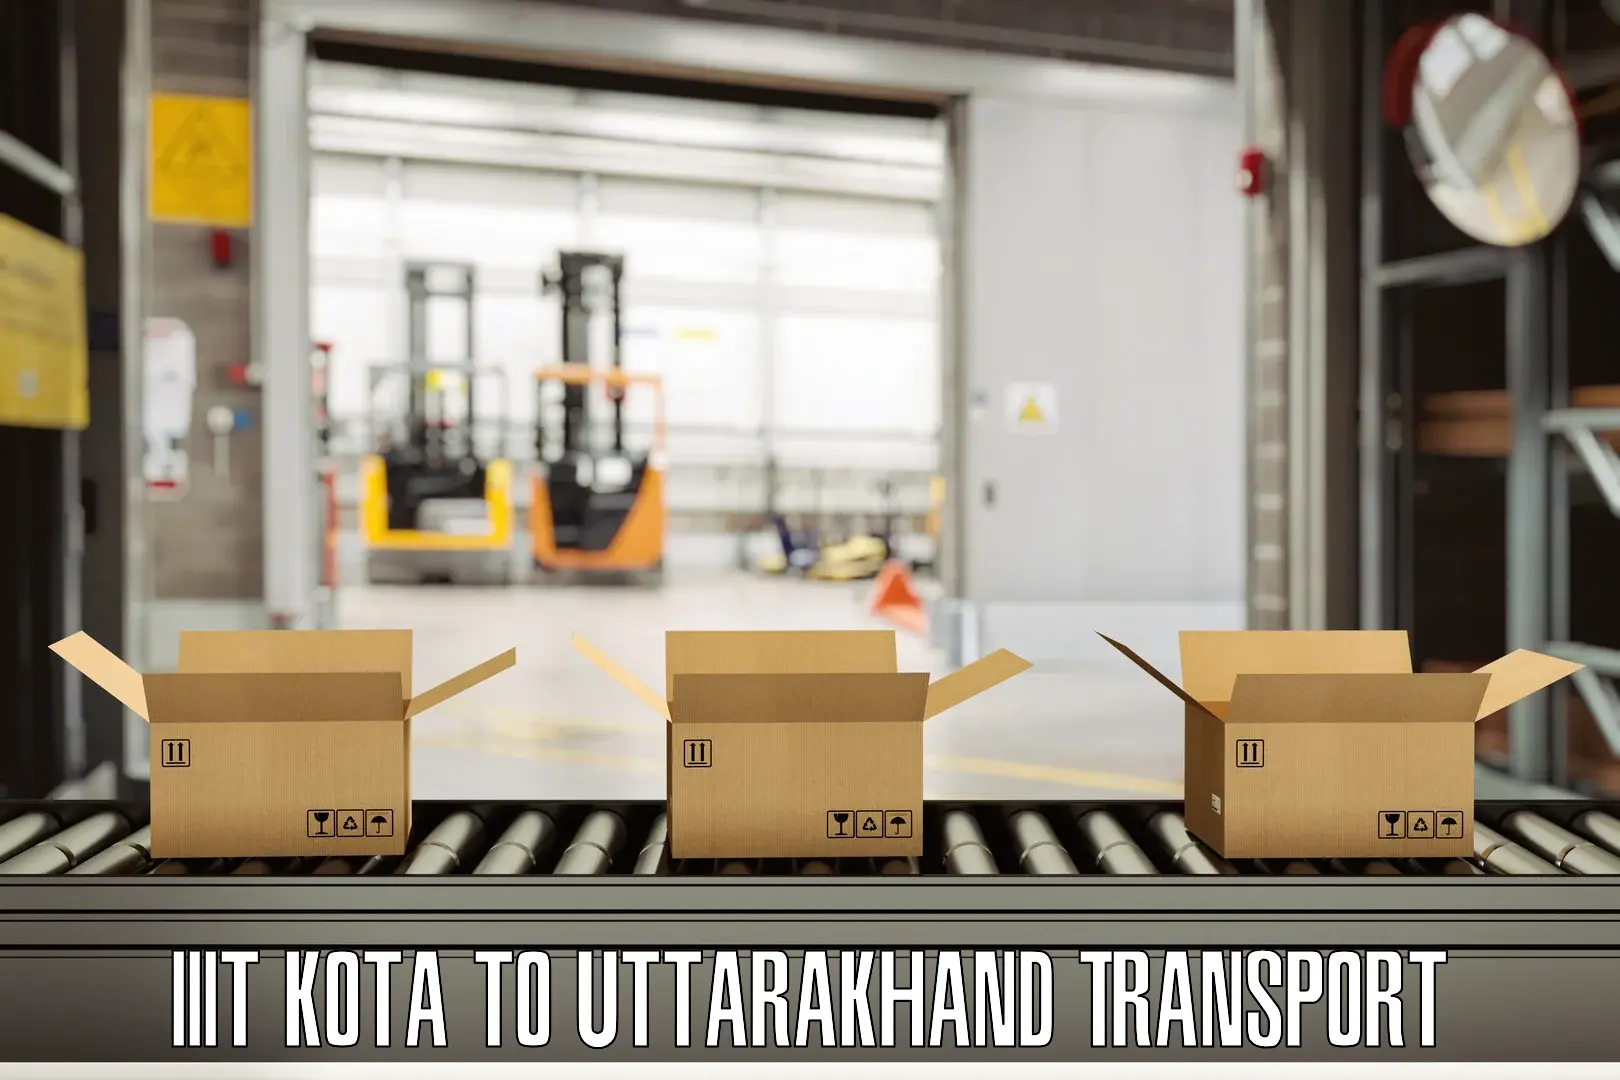 Road transport online services IIIT Kota to Herbertpur